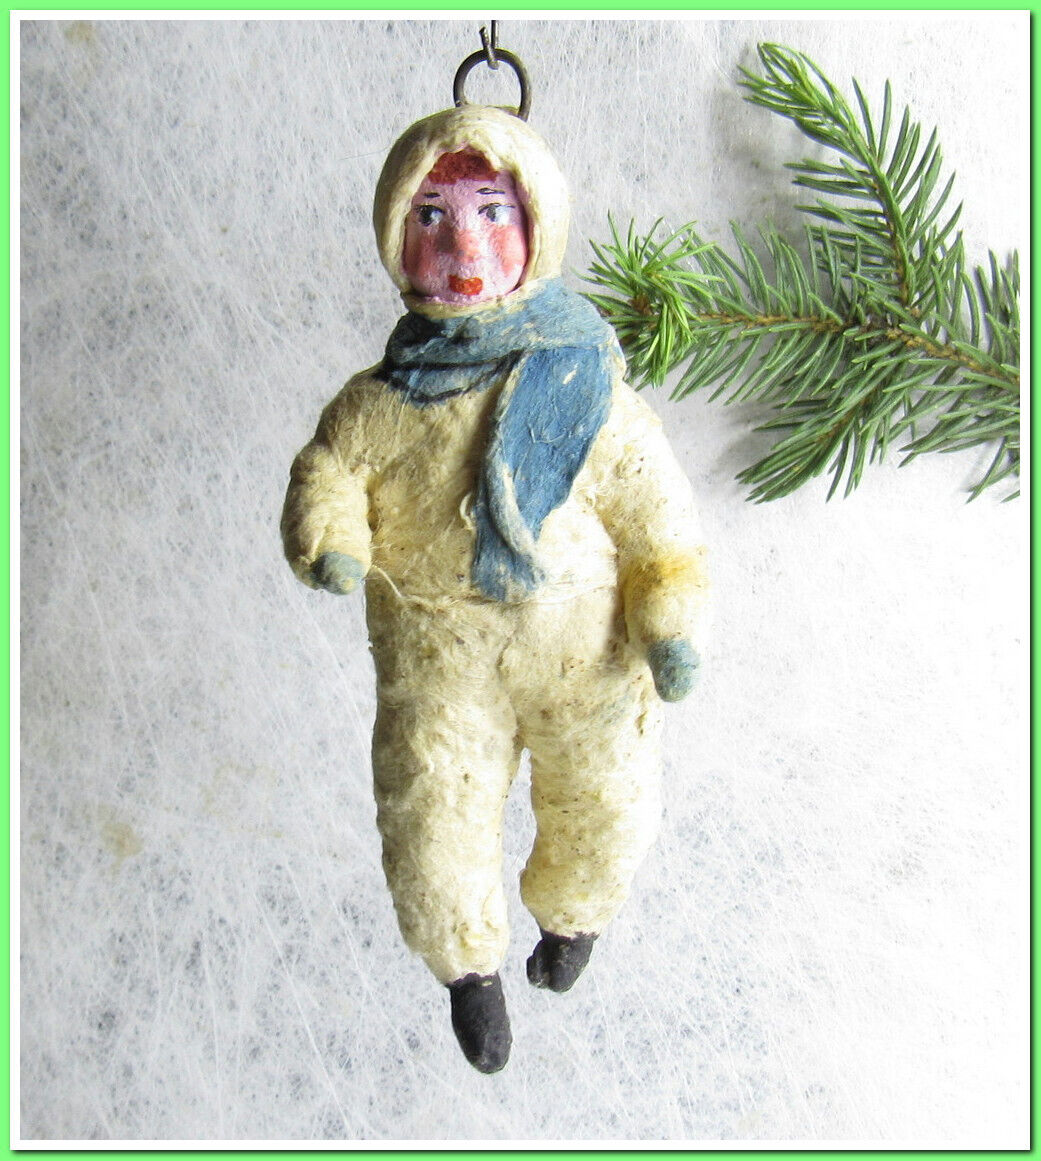 🎄Vintage antique Christmas spun cotton ornament figure #85243